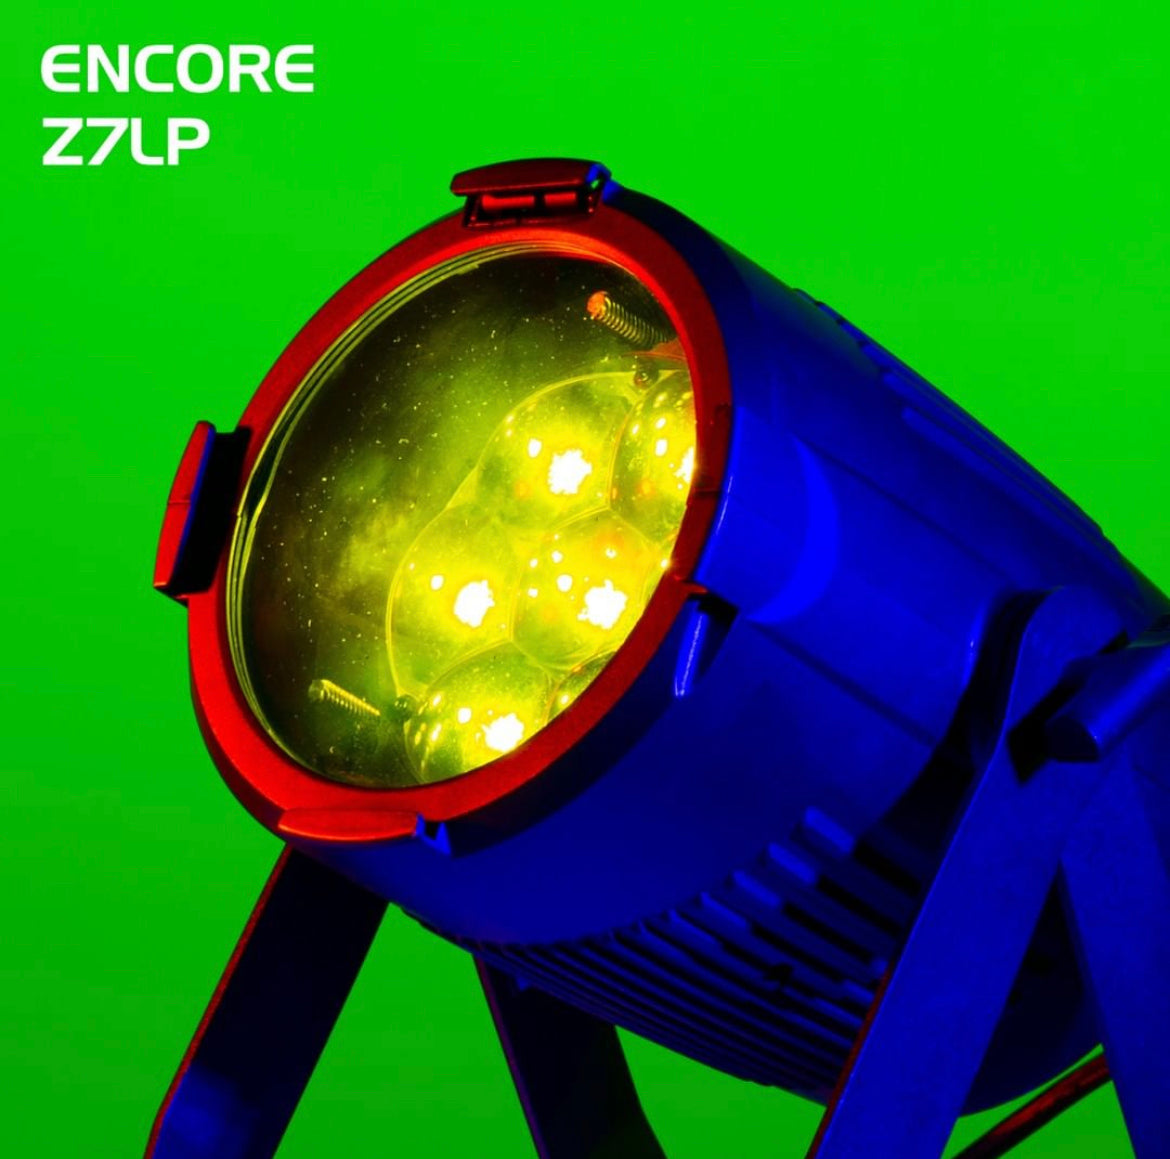 American DJ ADJ Encore Z7LP Versatile LED Par Fixture [B-STOCK]